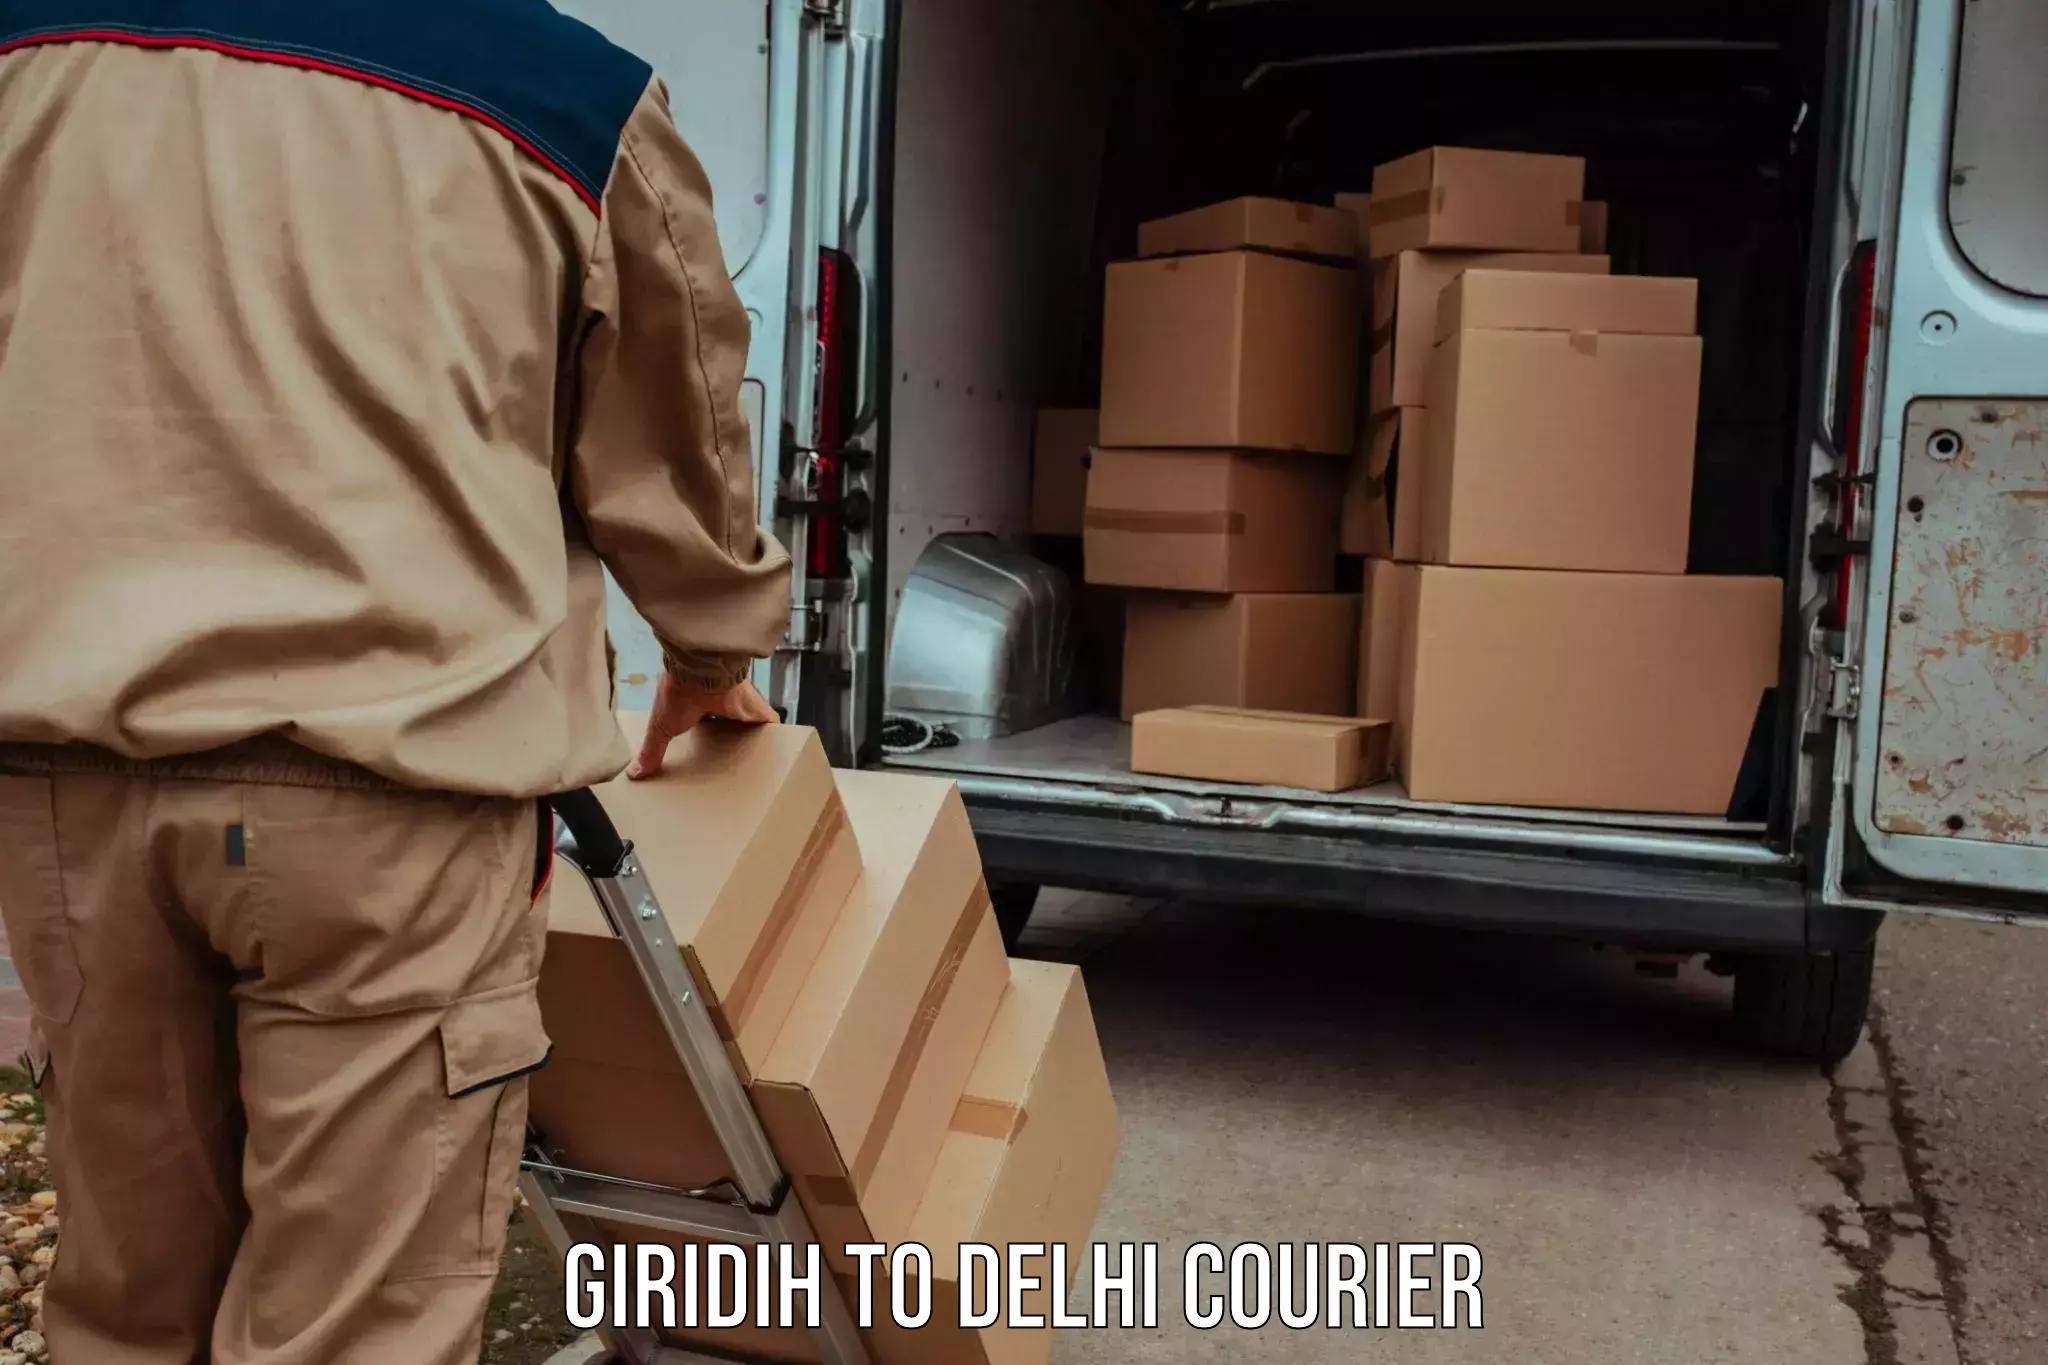 Nationwide delivery network Giridih to Kalkaji